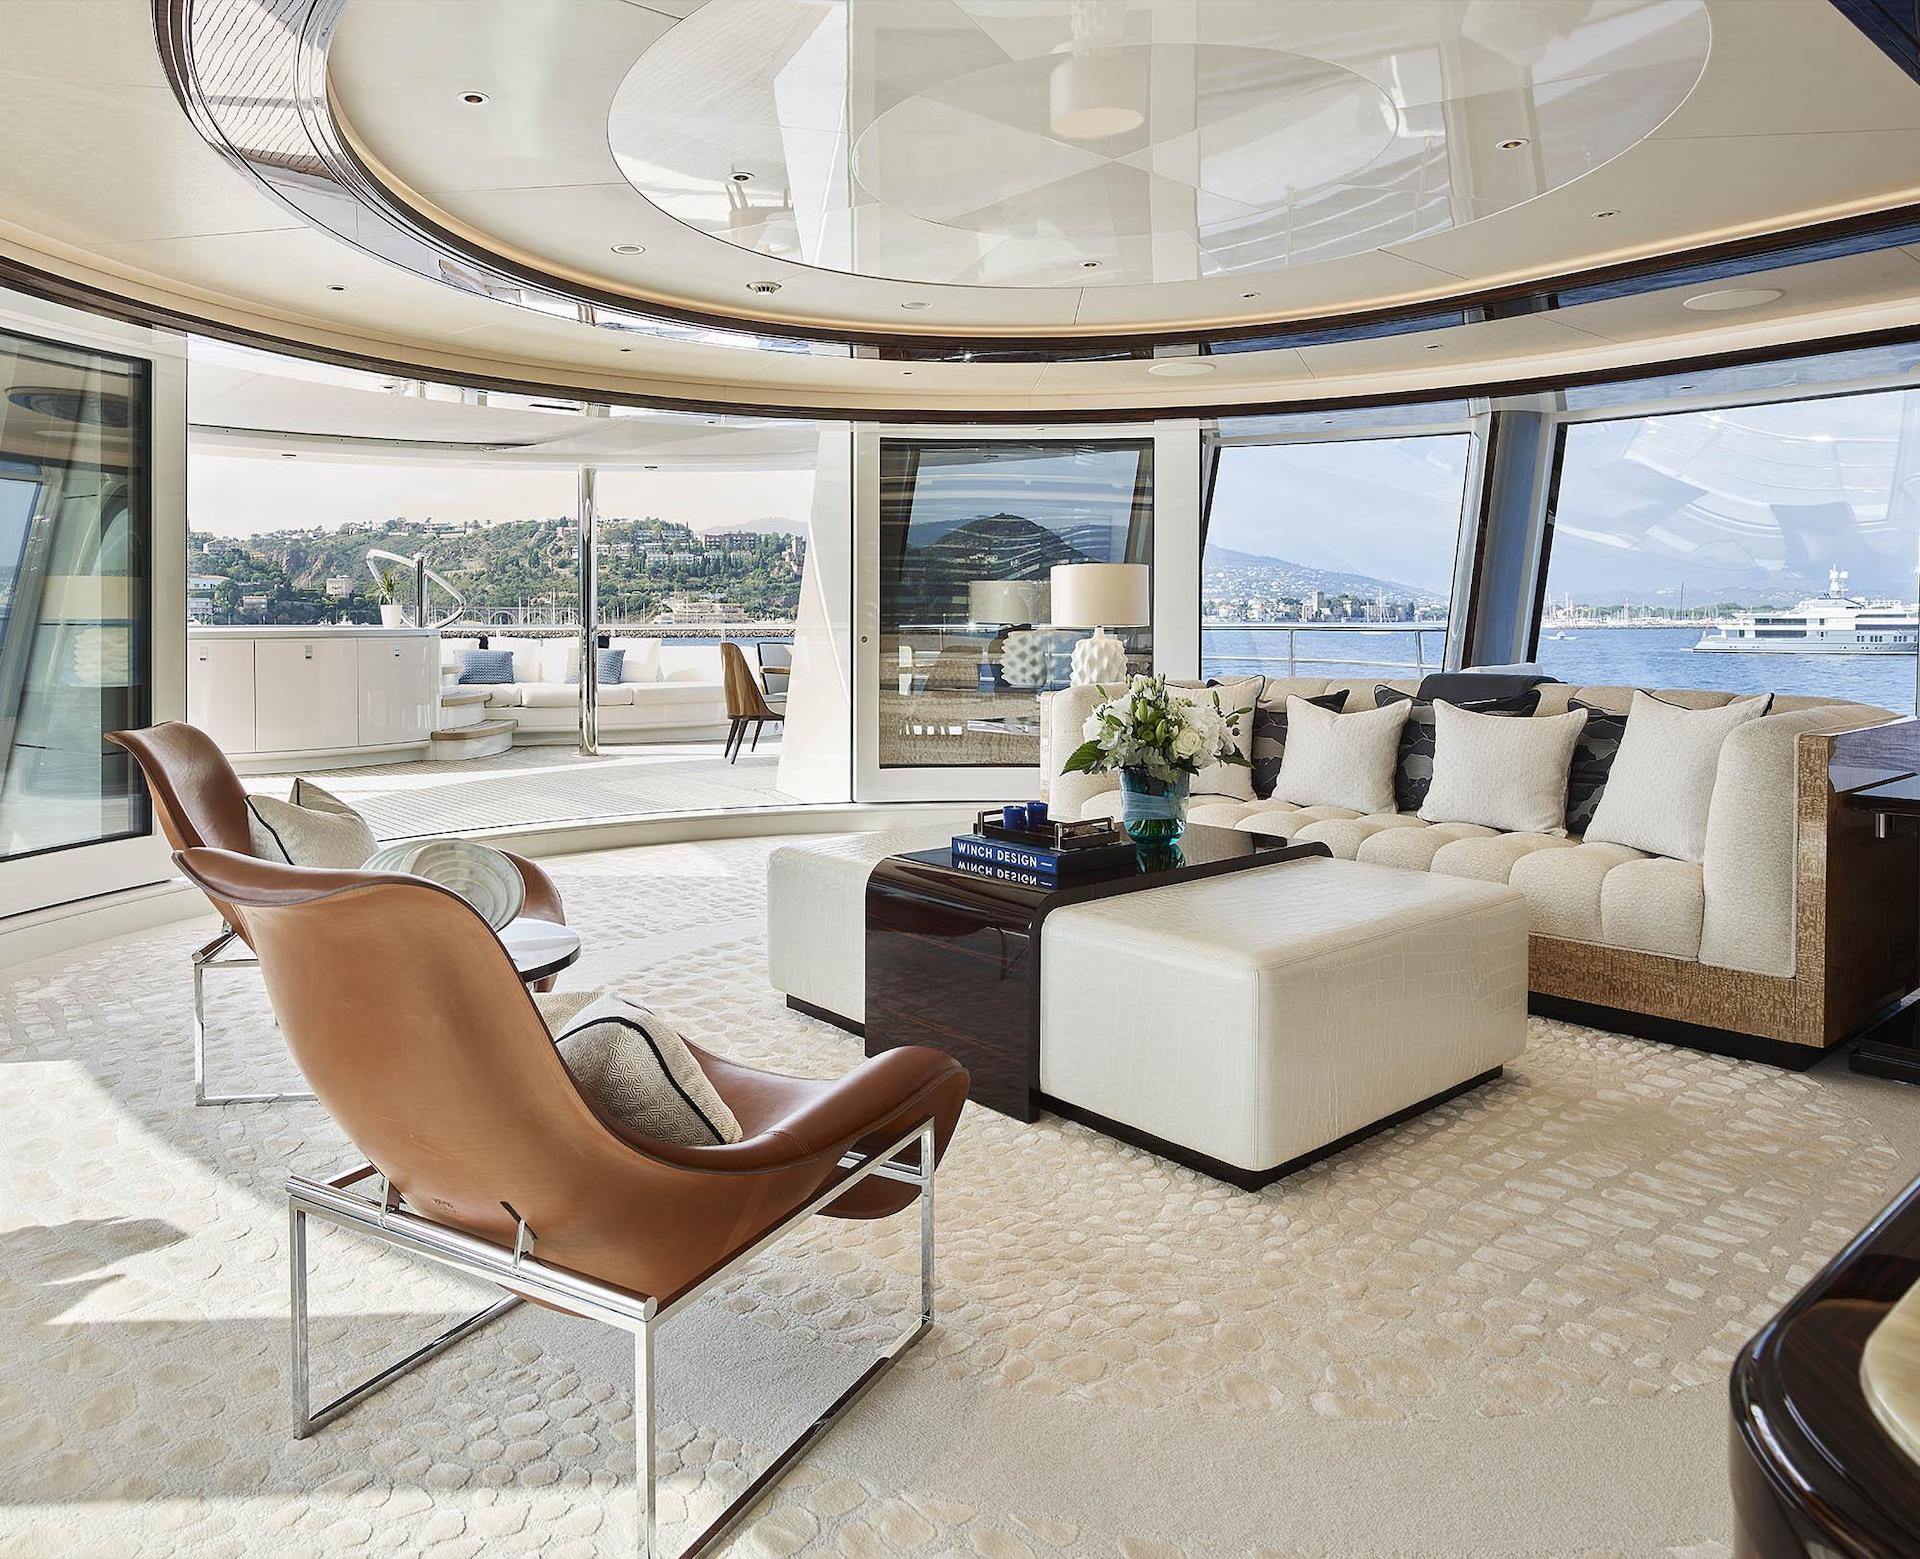 modern yacht interior